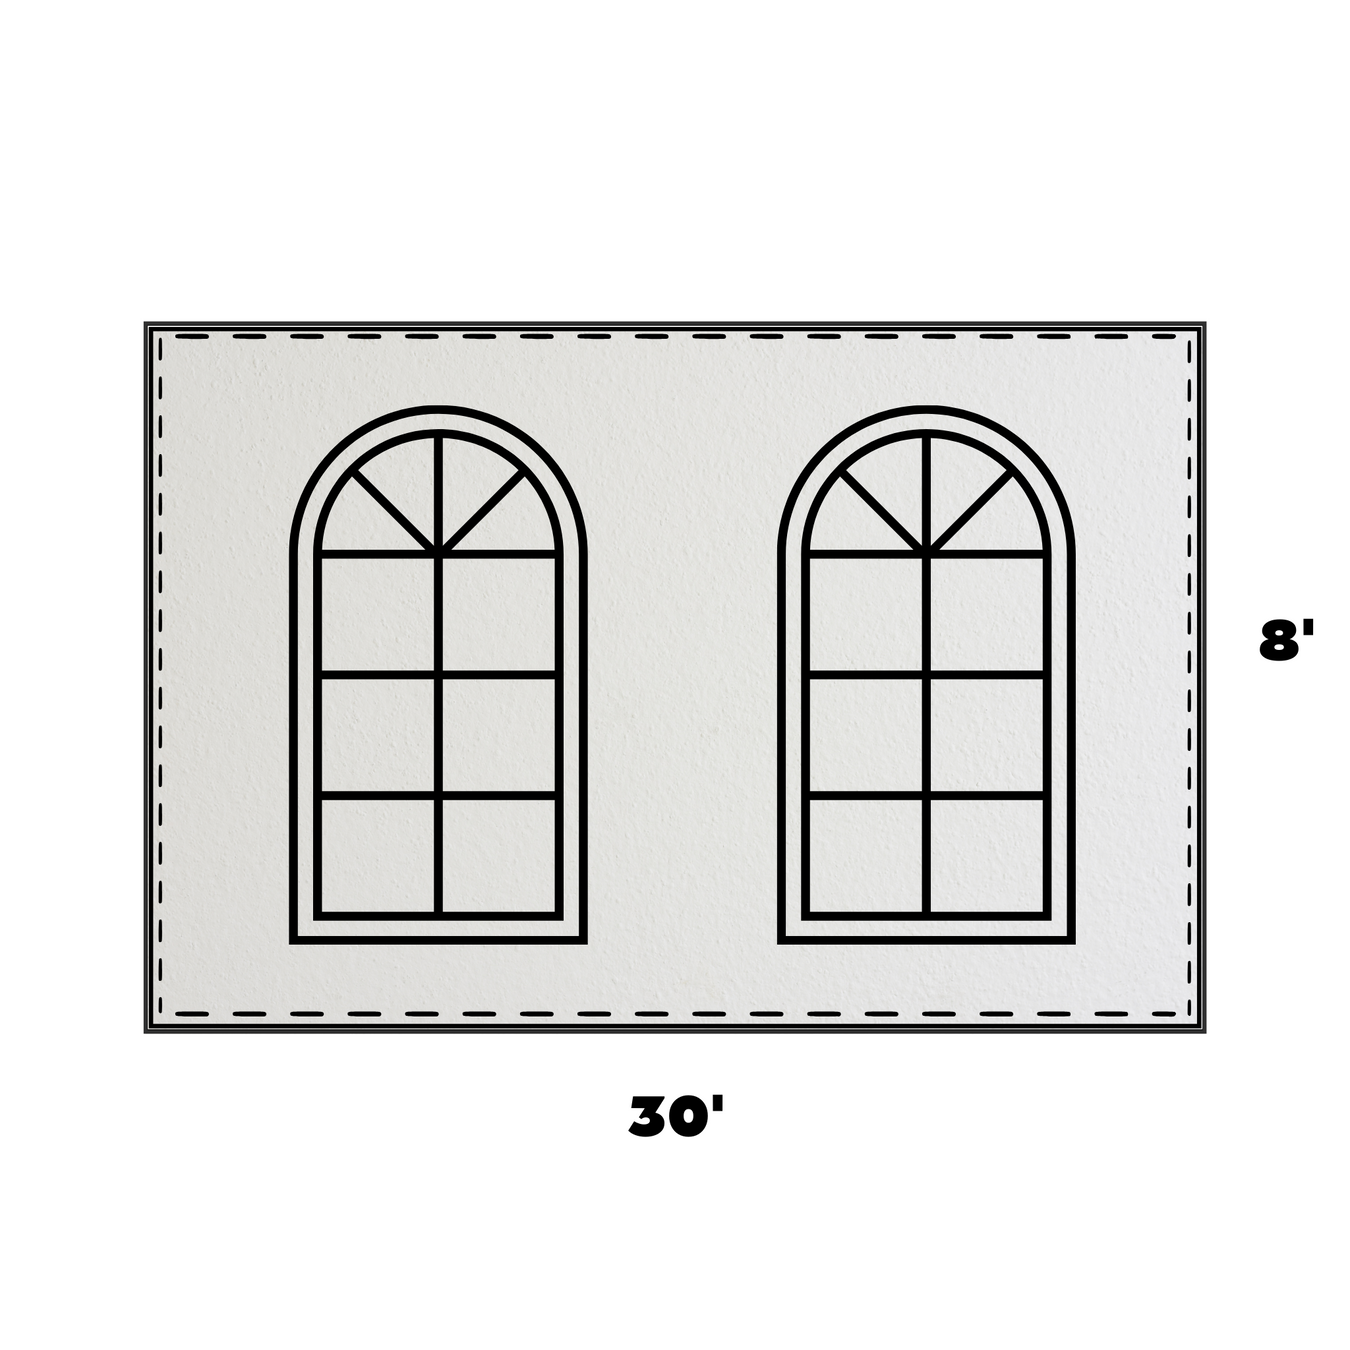 8 x 30 Cathedral Window Sidewall